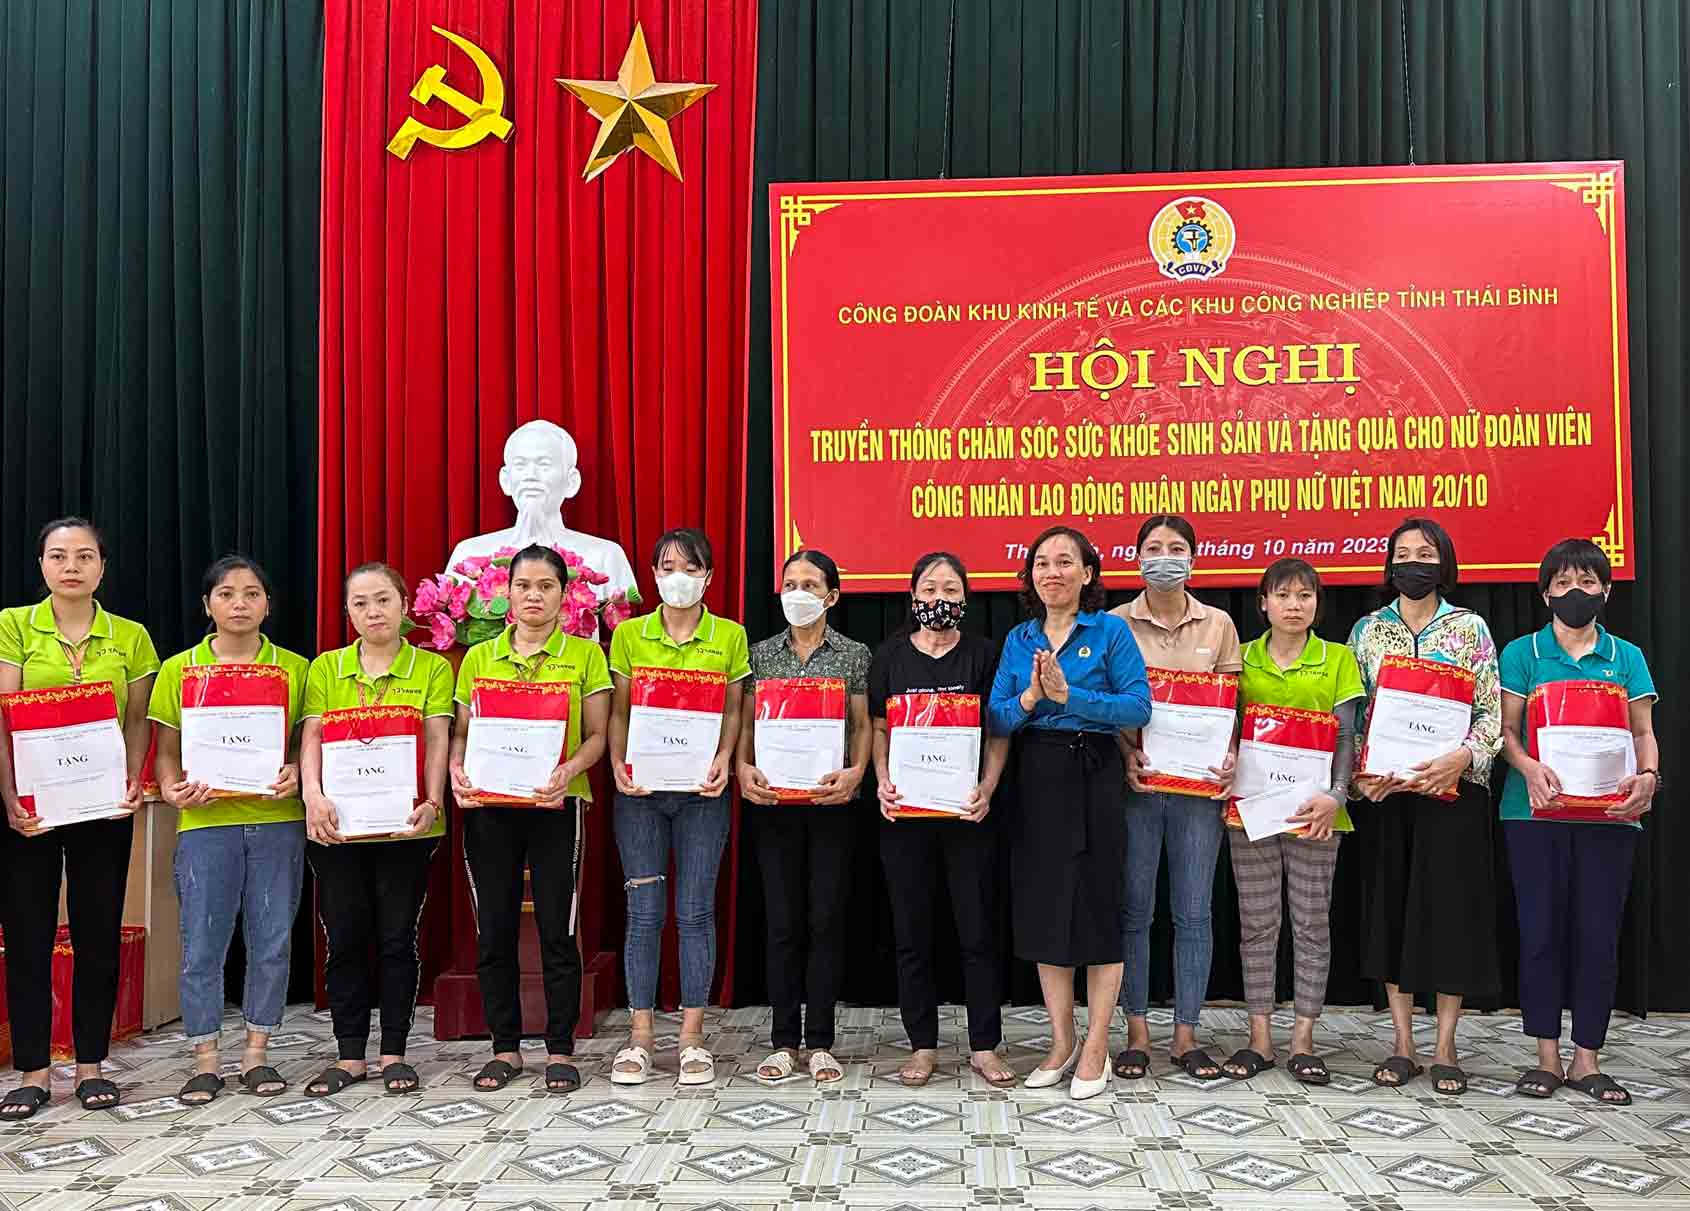 Lãnh đạo LĐLĐ tỉnh Thái Bình tặng quà cho nữ công nhân lao động tại hội nghị. Ảnh: Lương Hà